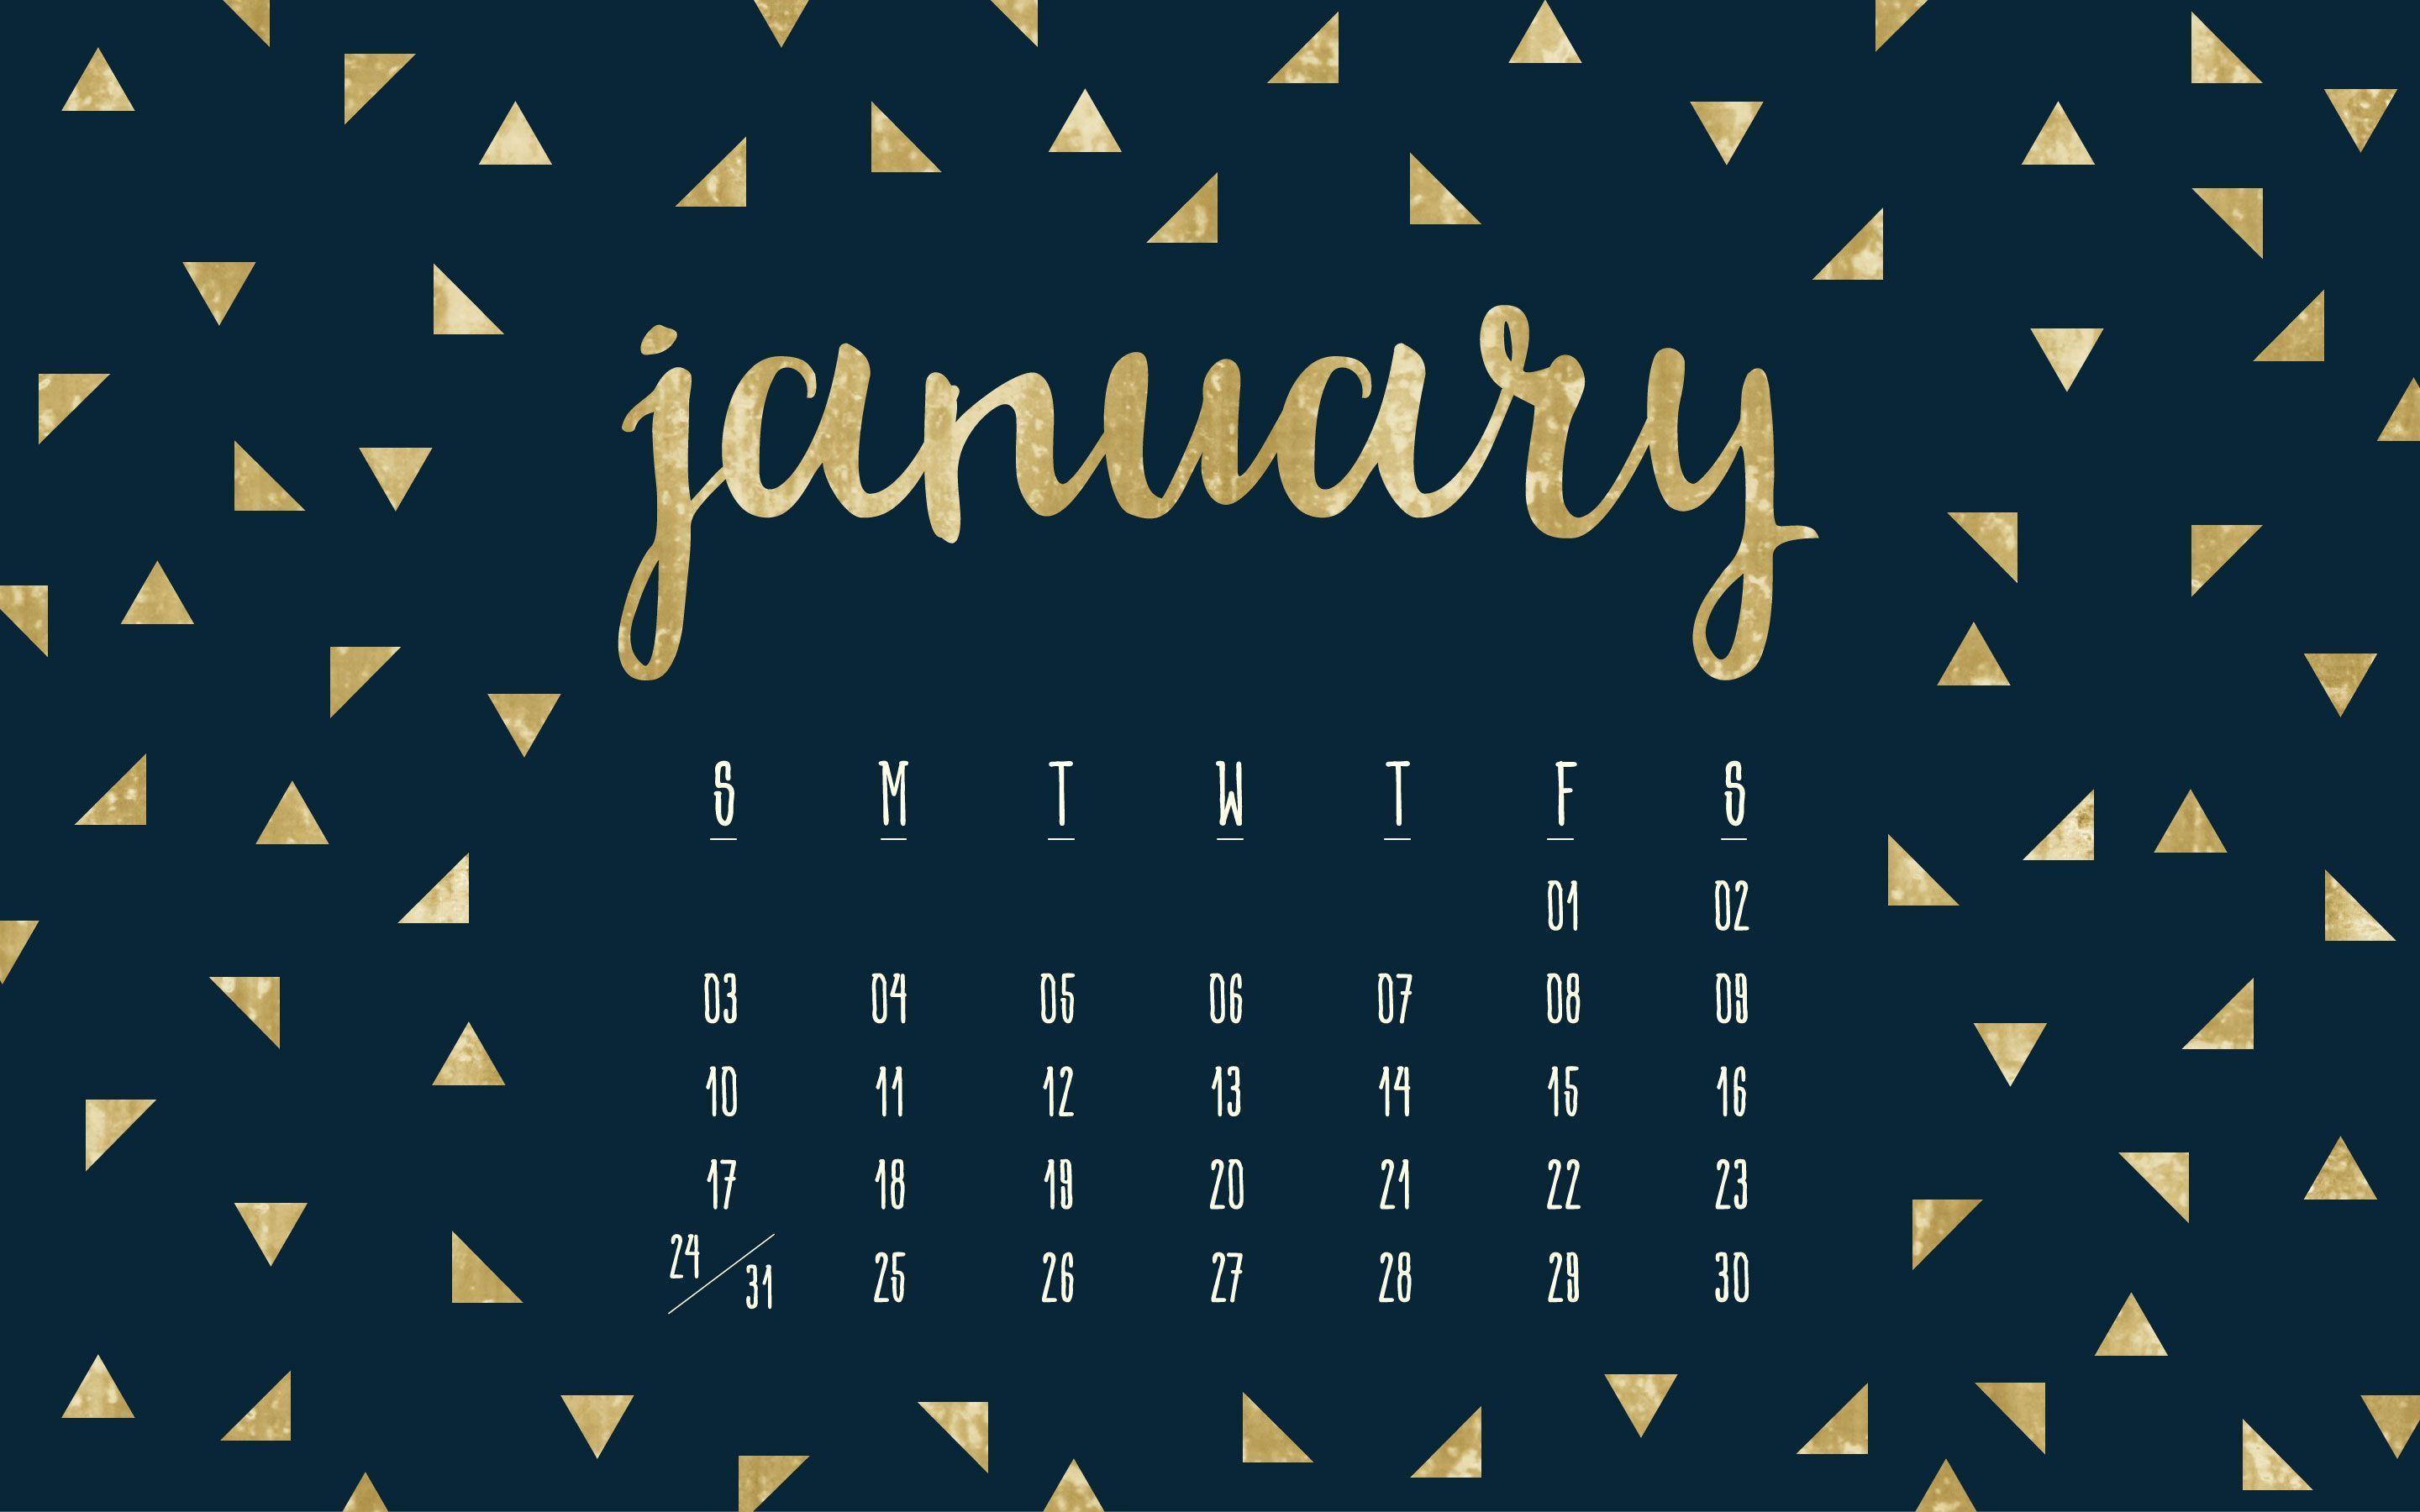 golden-stones-january-2019-iphone-calendar-desktop-wallpaper-calendar